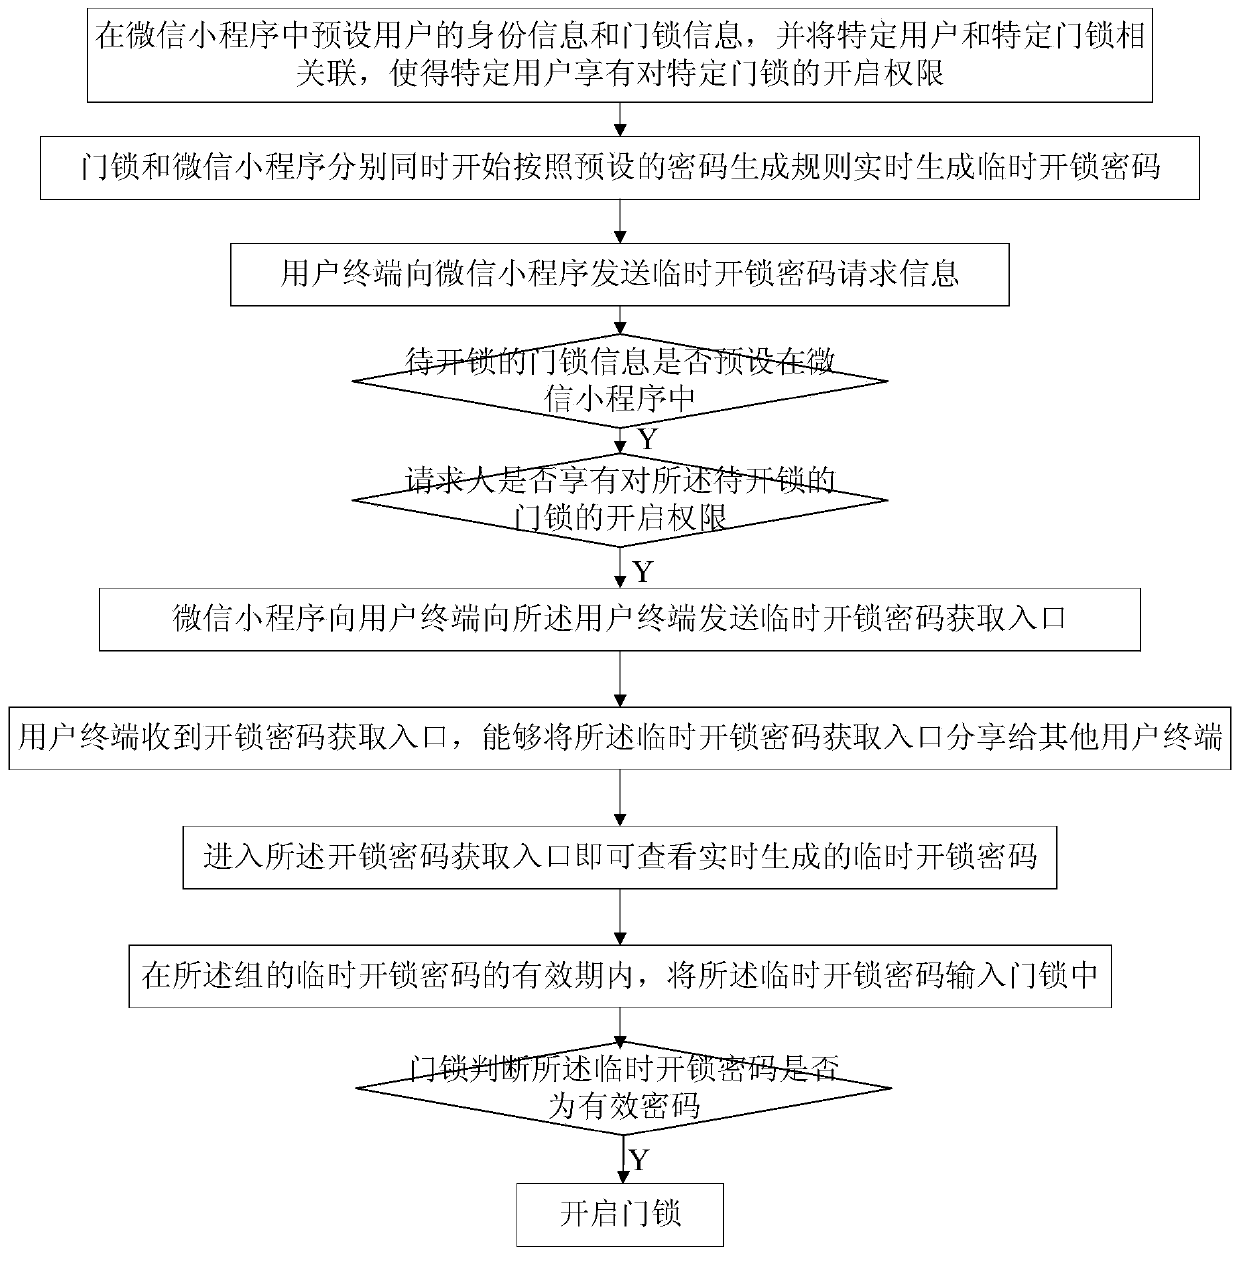 Intelligent door unlocking method based on WeChat applet